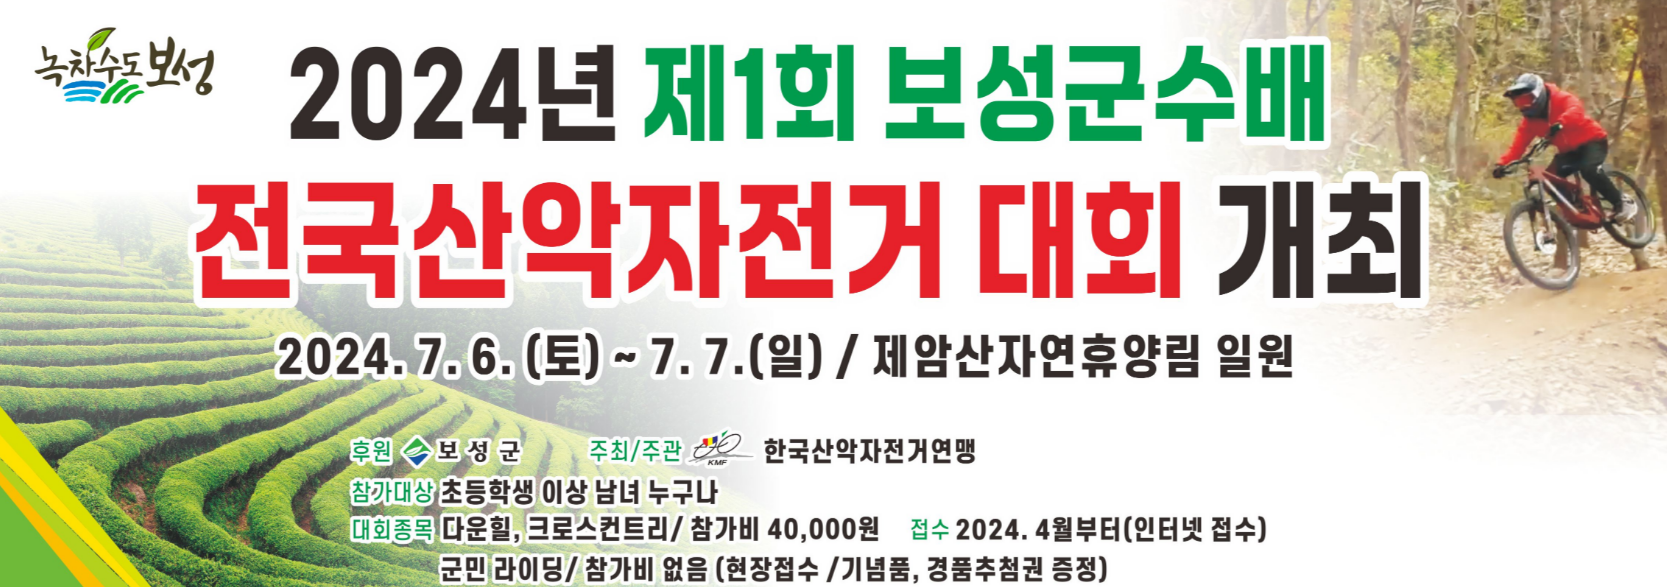 보성군, 내달 제1회 보성군수배 전국산악자전거대회' 개최